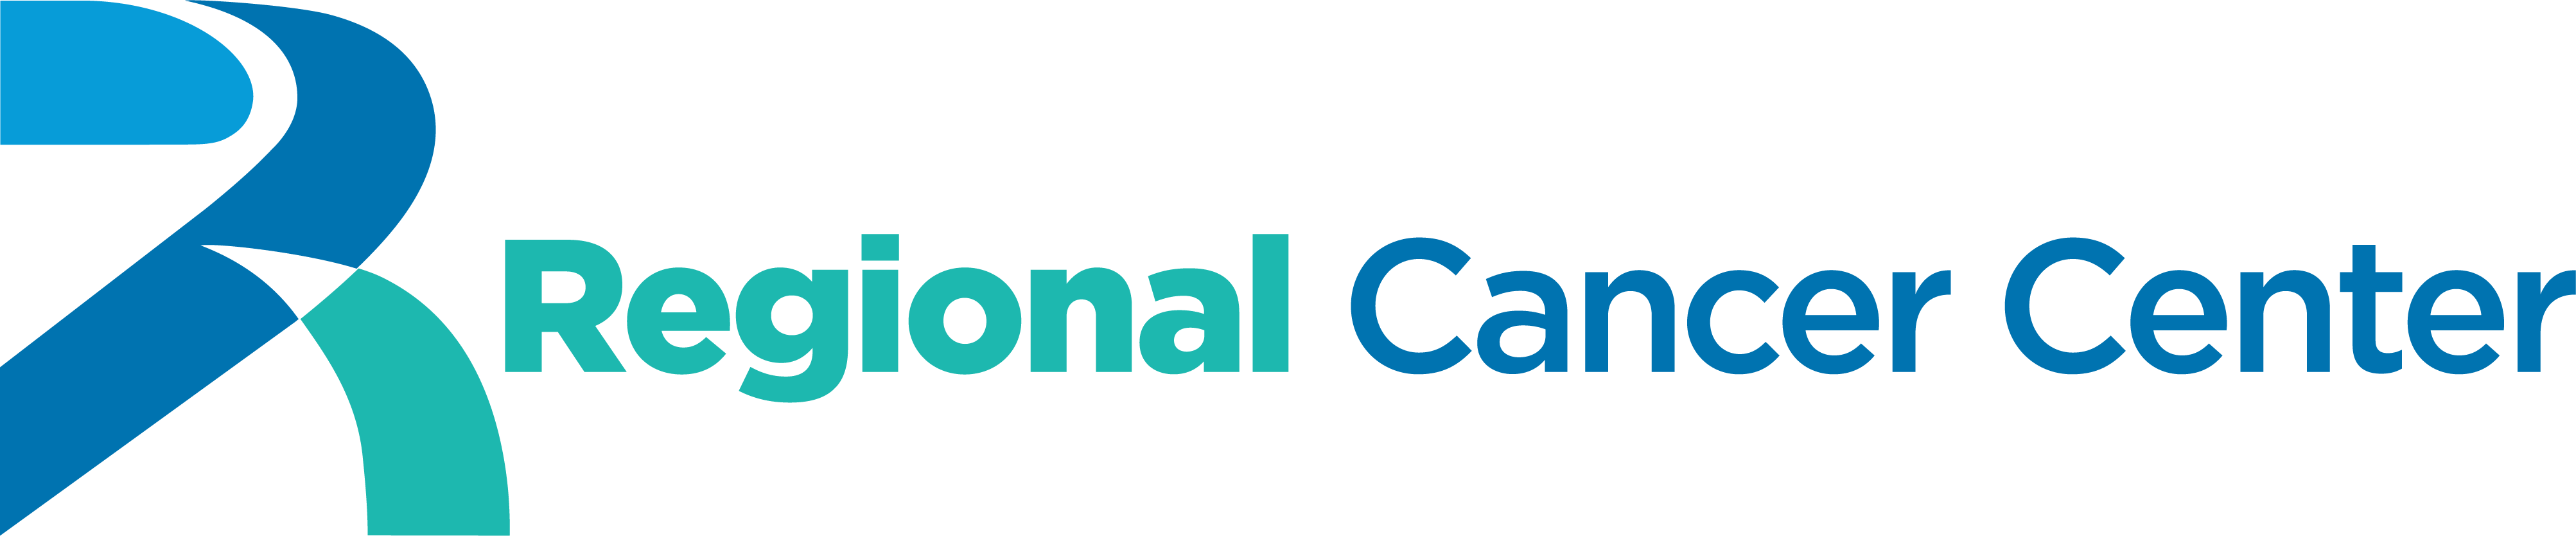 Regional Cancer Center Logo